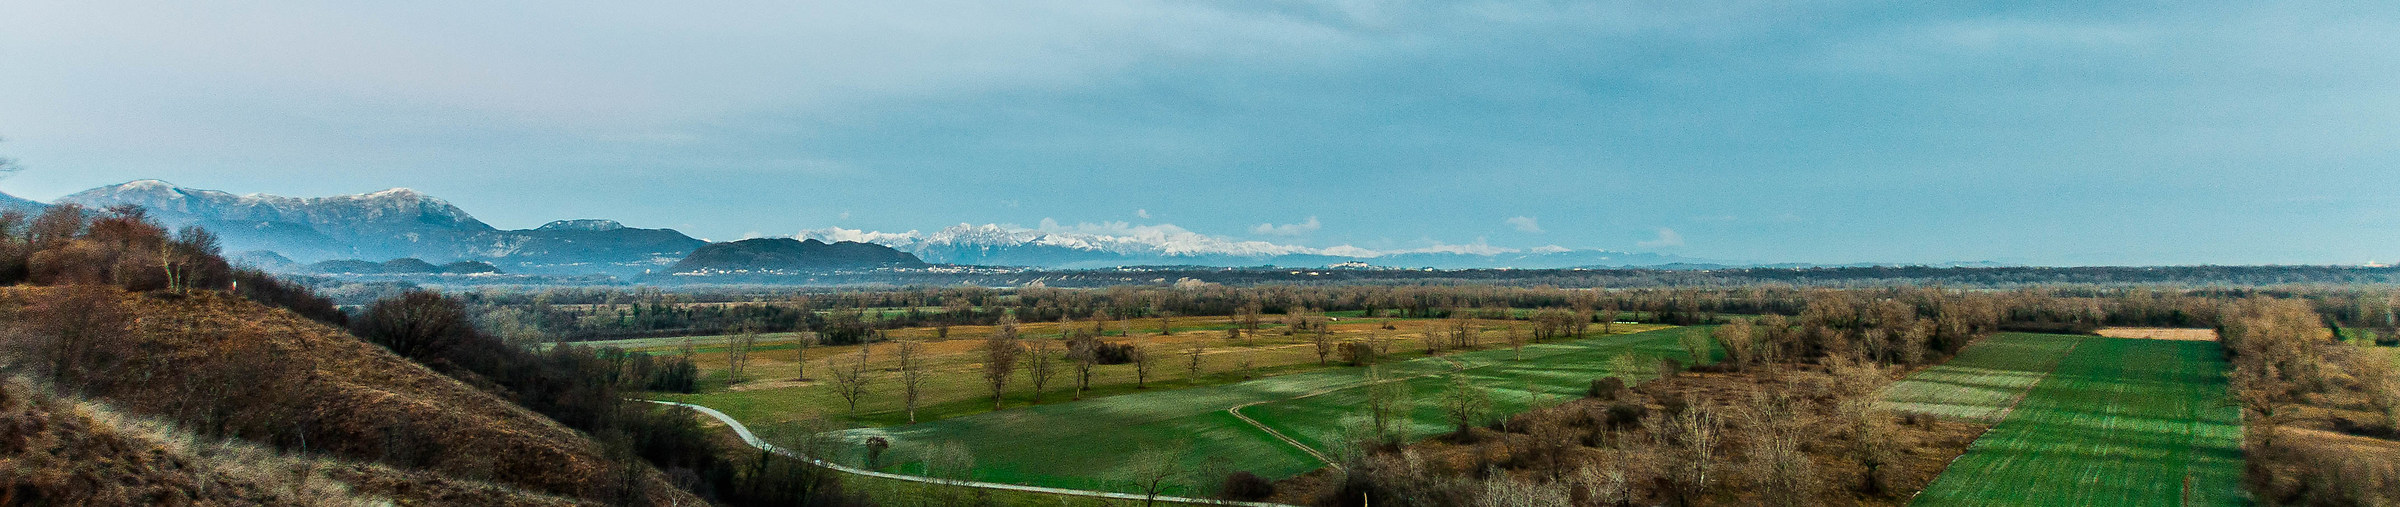 Friulian mountains...